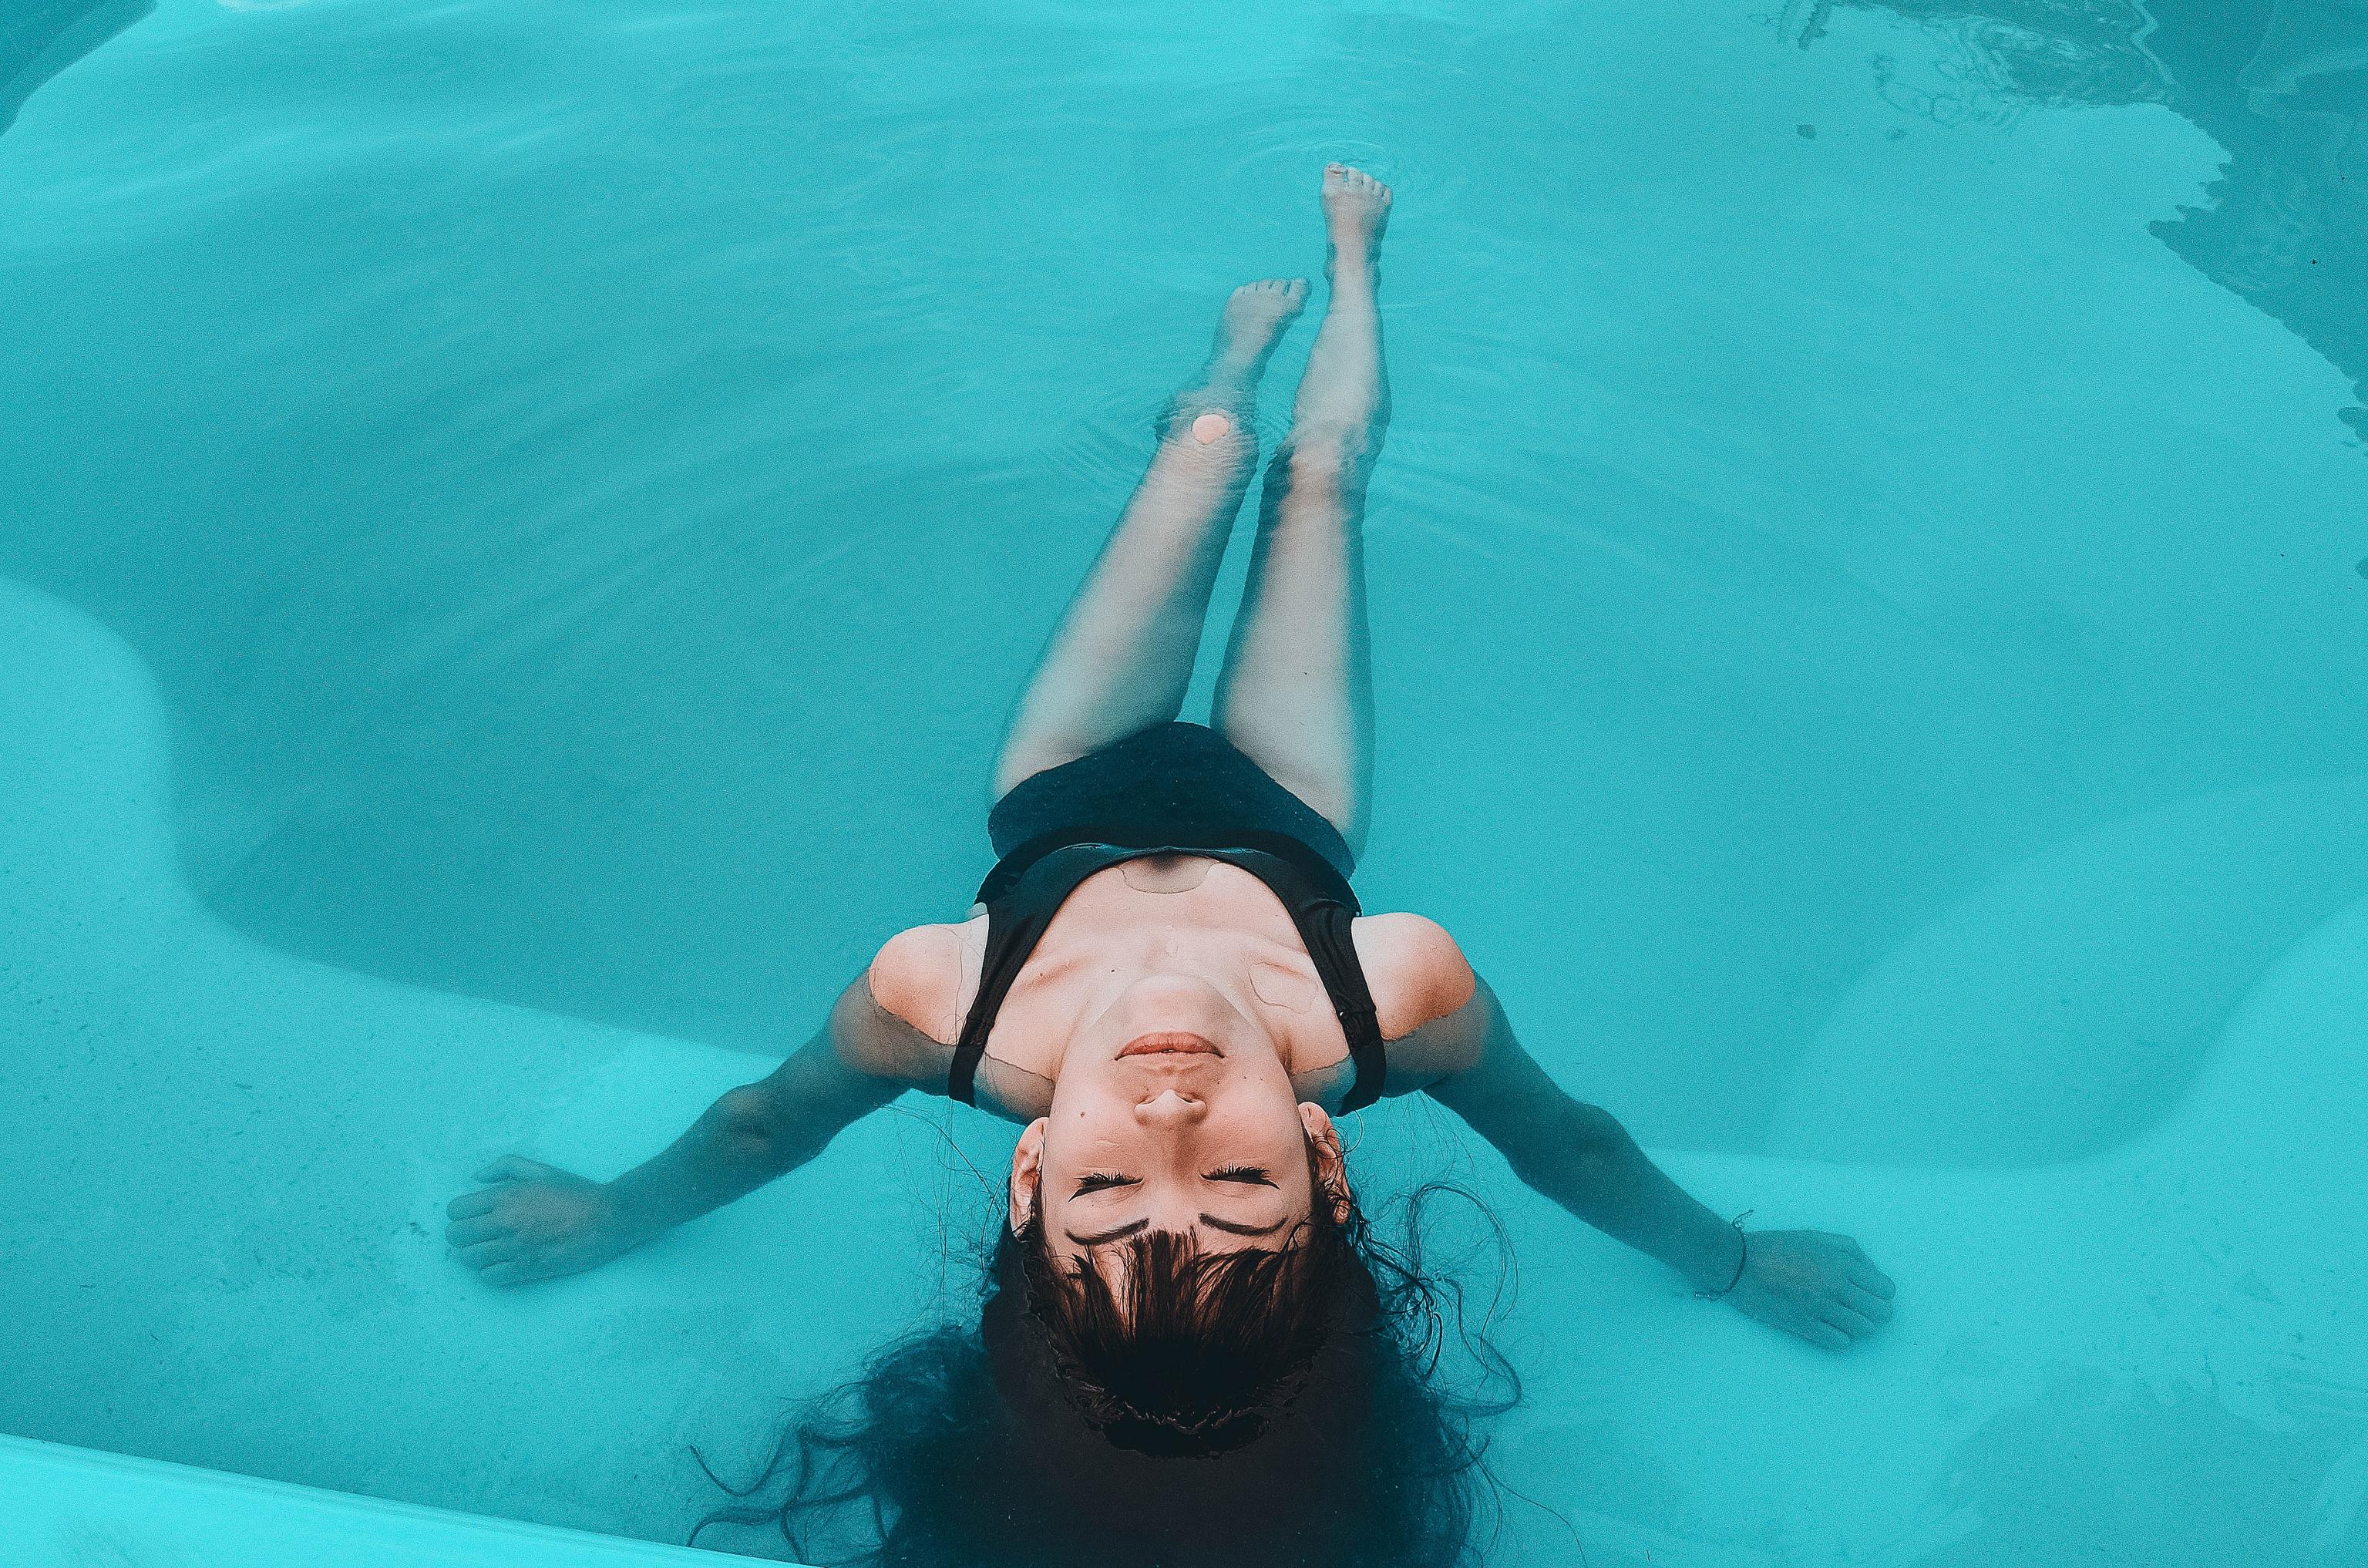 ALT: 10 piscinas pequeas con encanto para pasar todo el verano en ellas